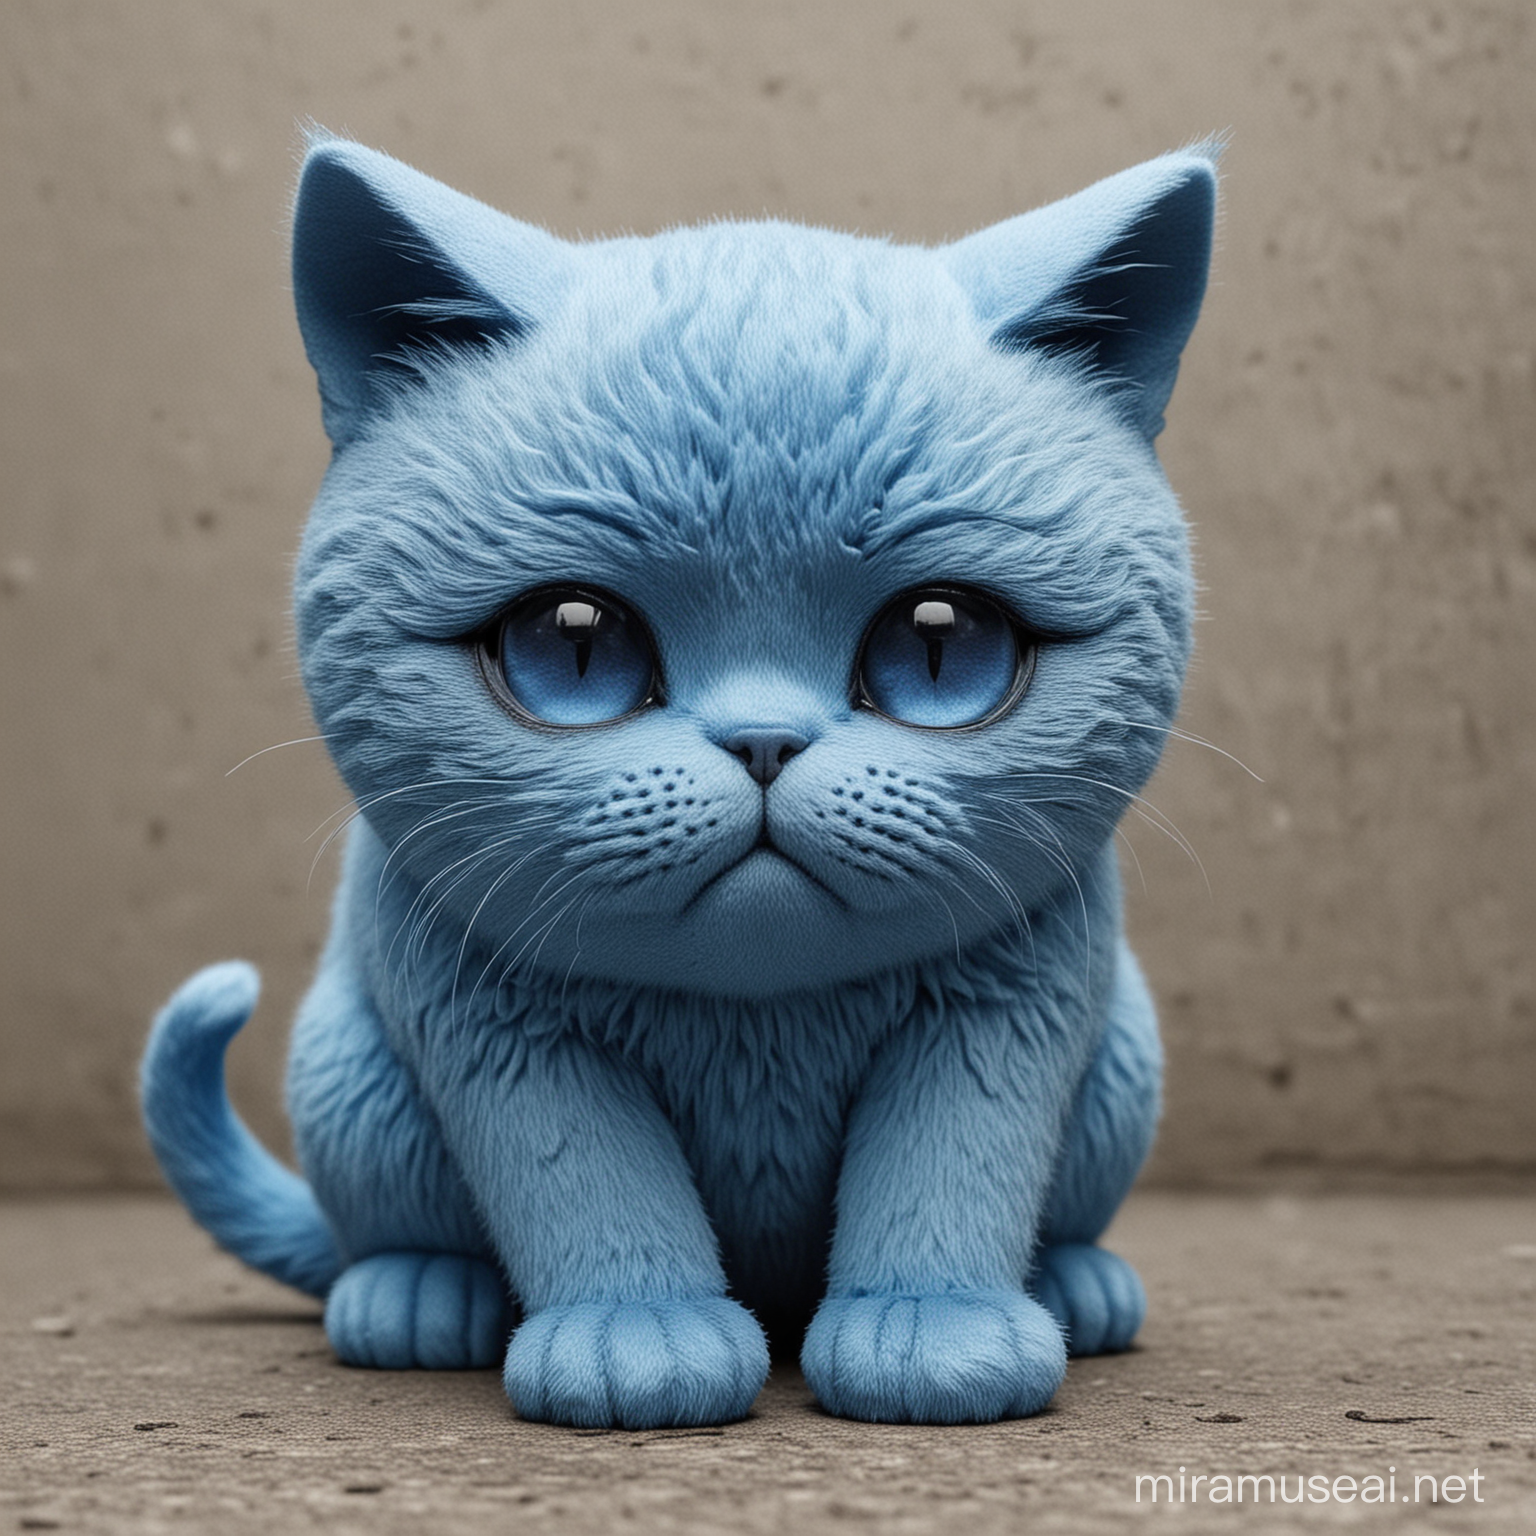 Sad blue cat

